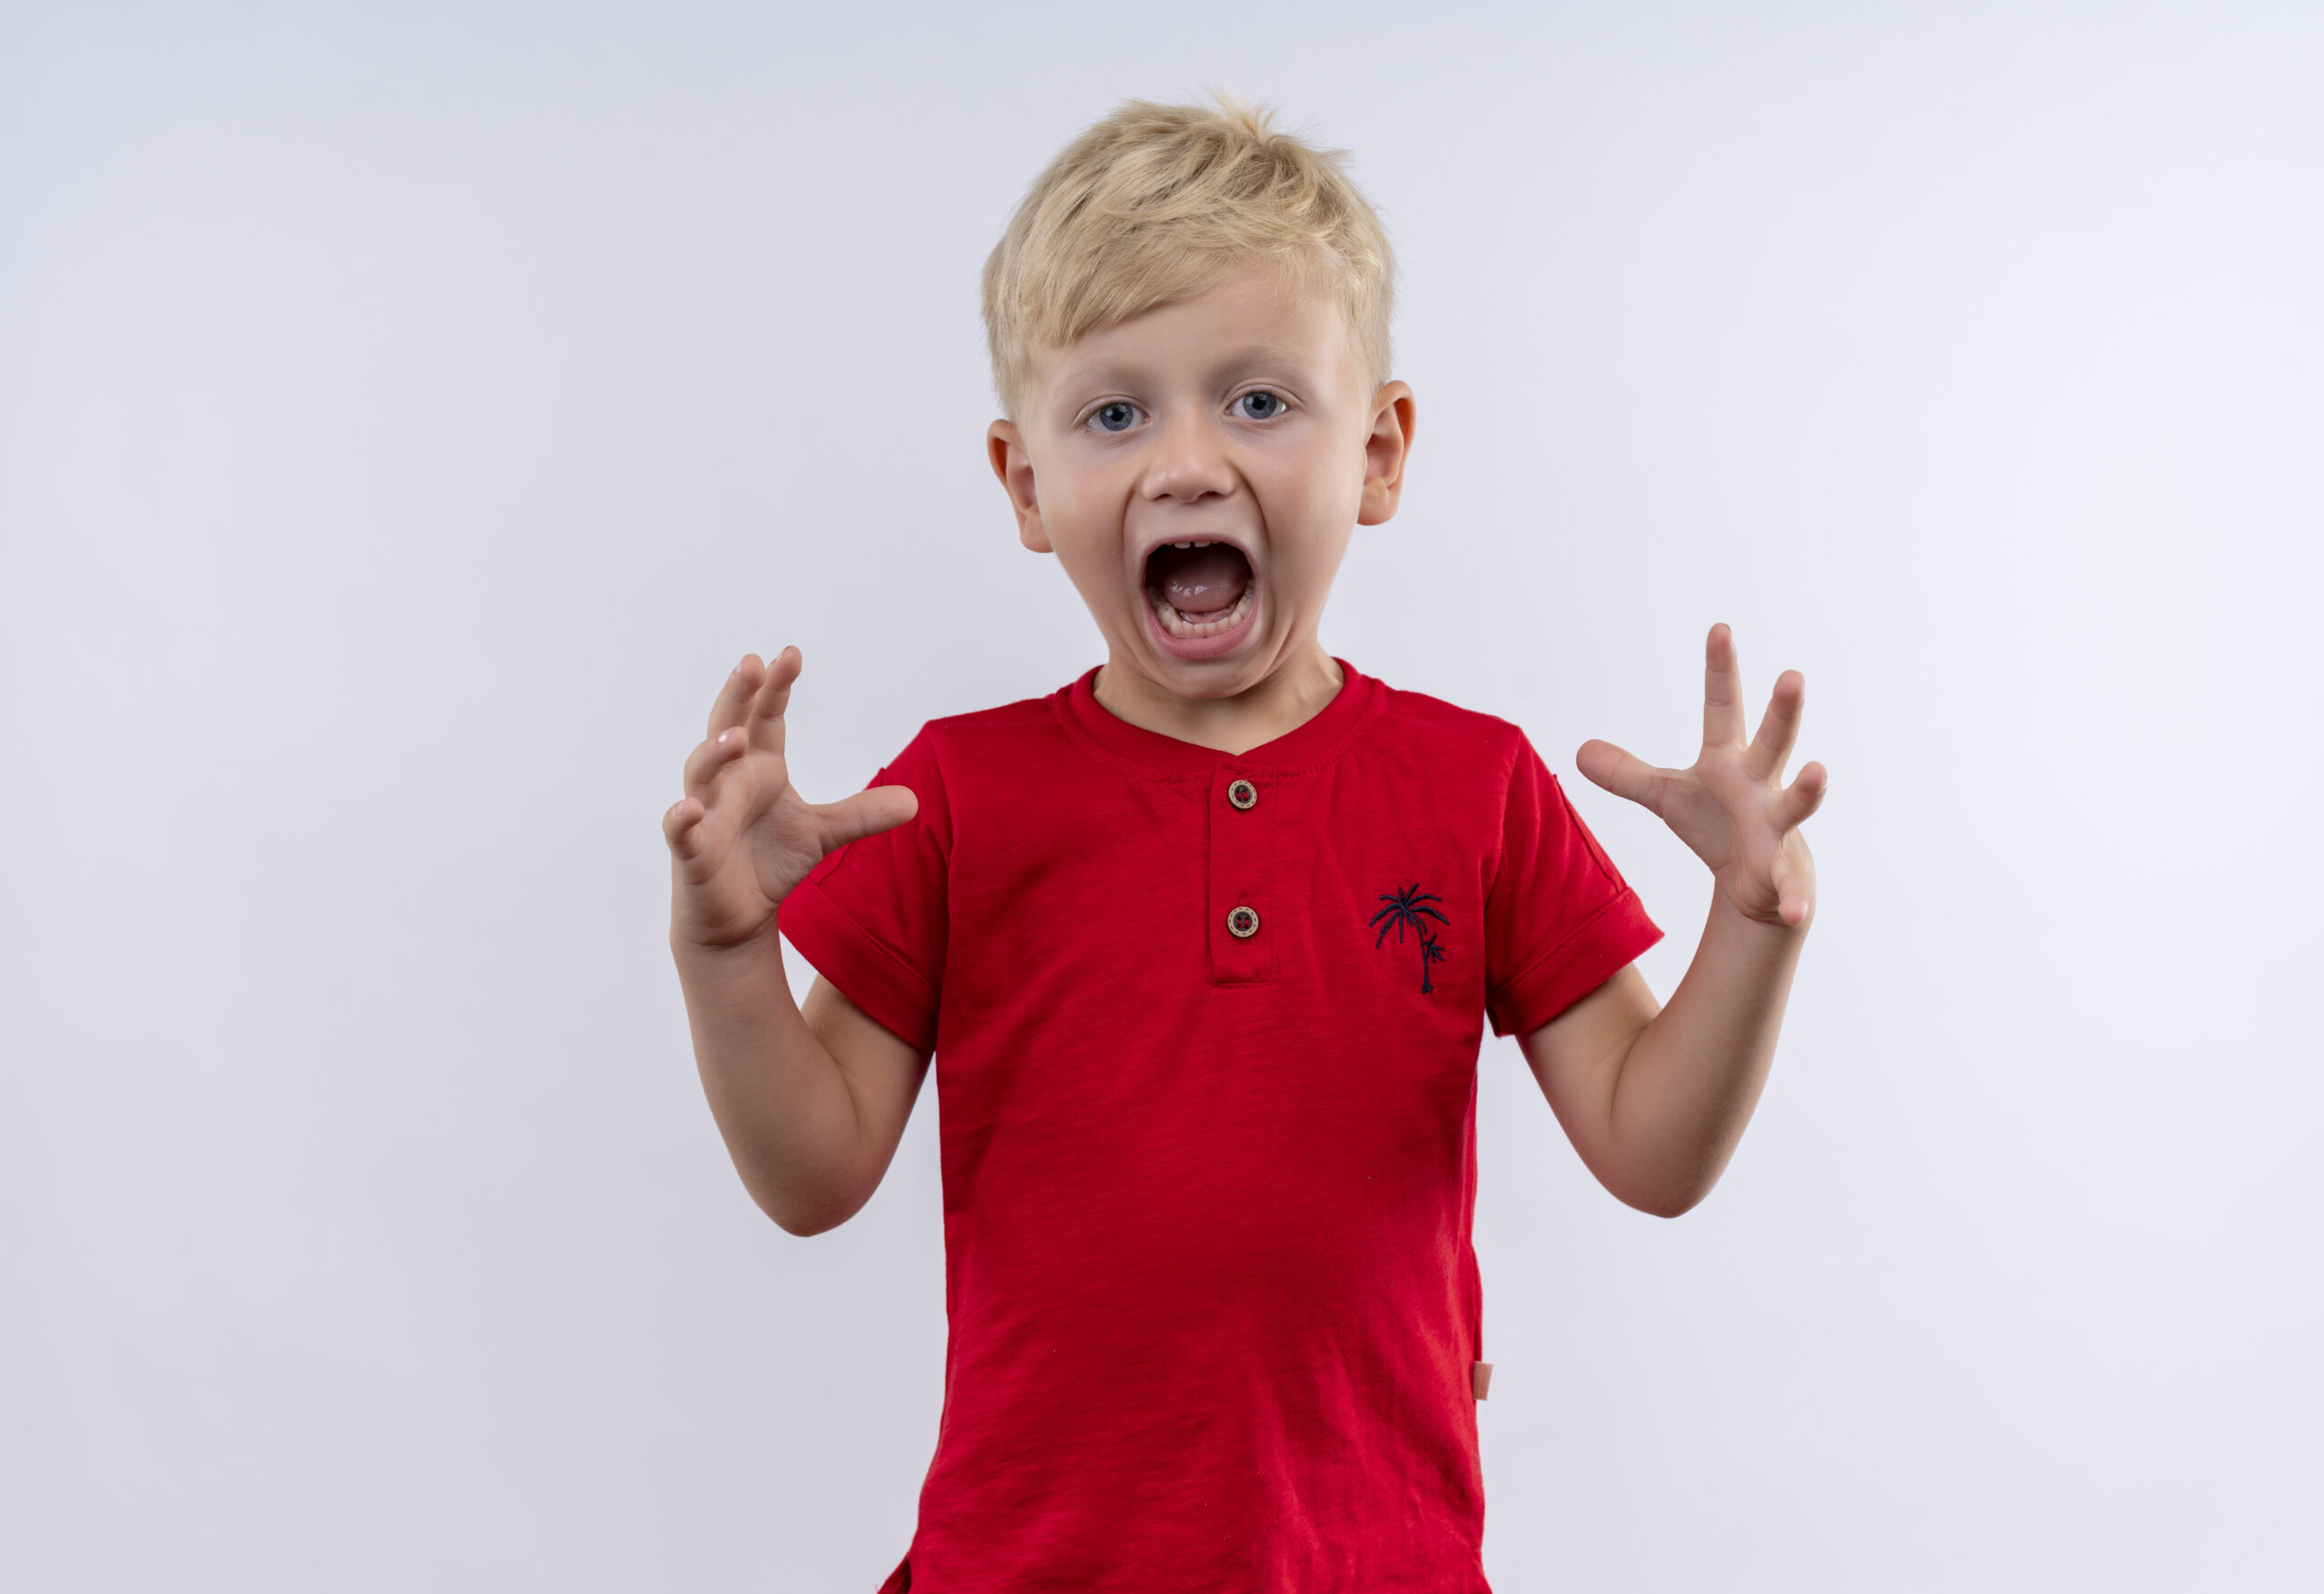 kričanie má za následok aj zvýšenú agresivitu dieťaťa